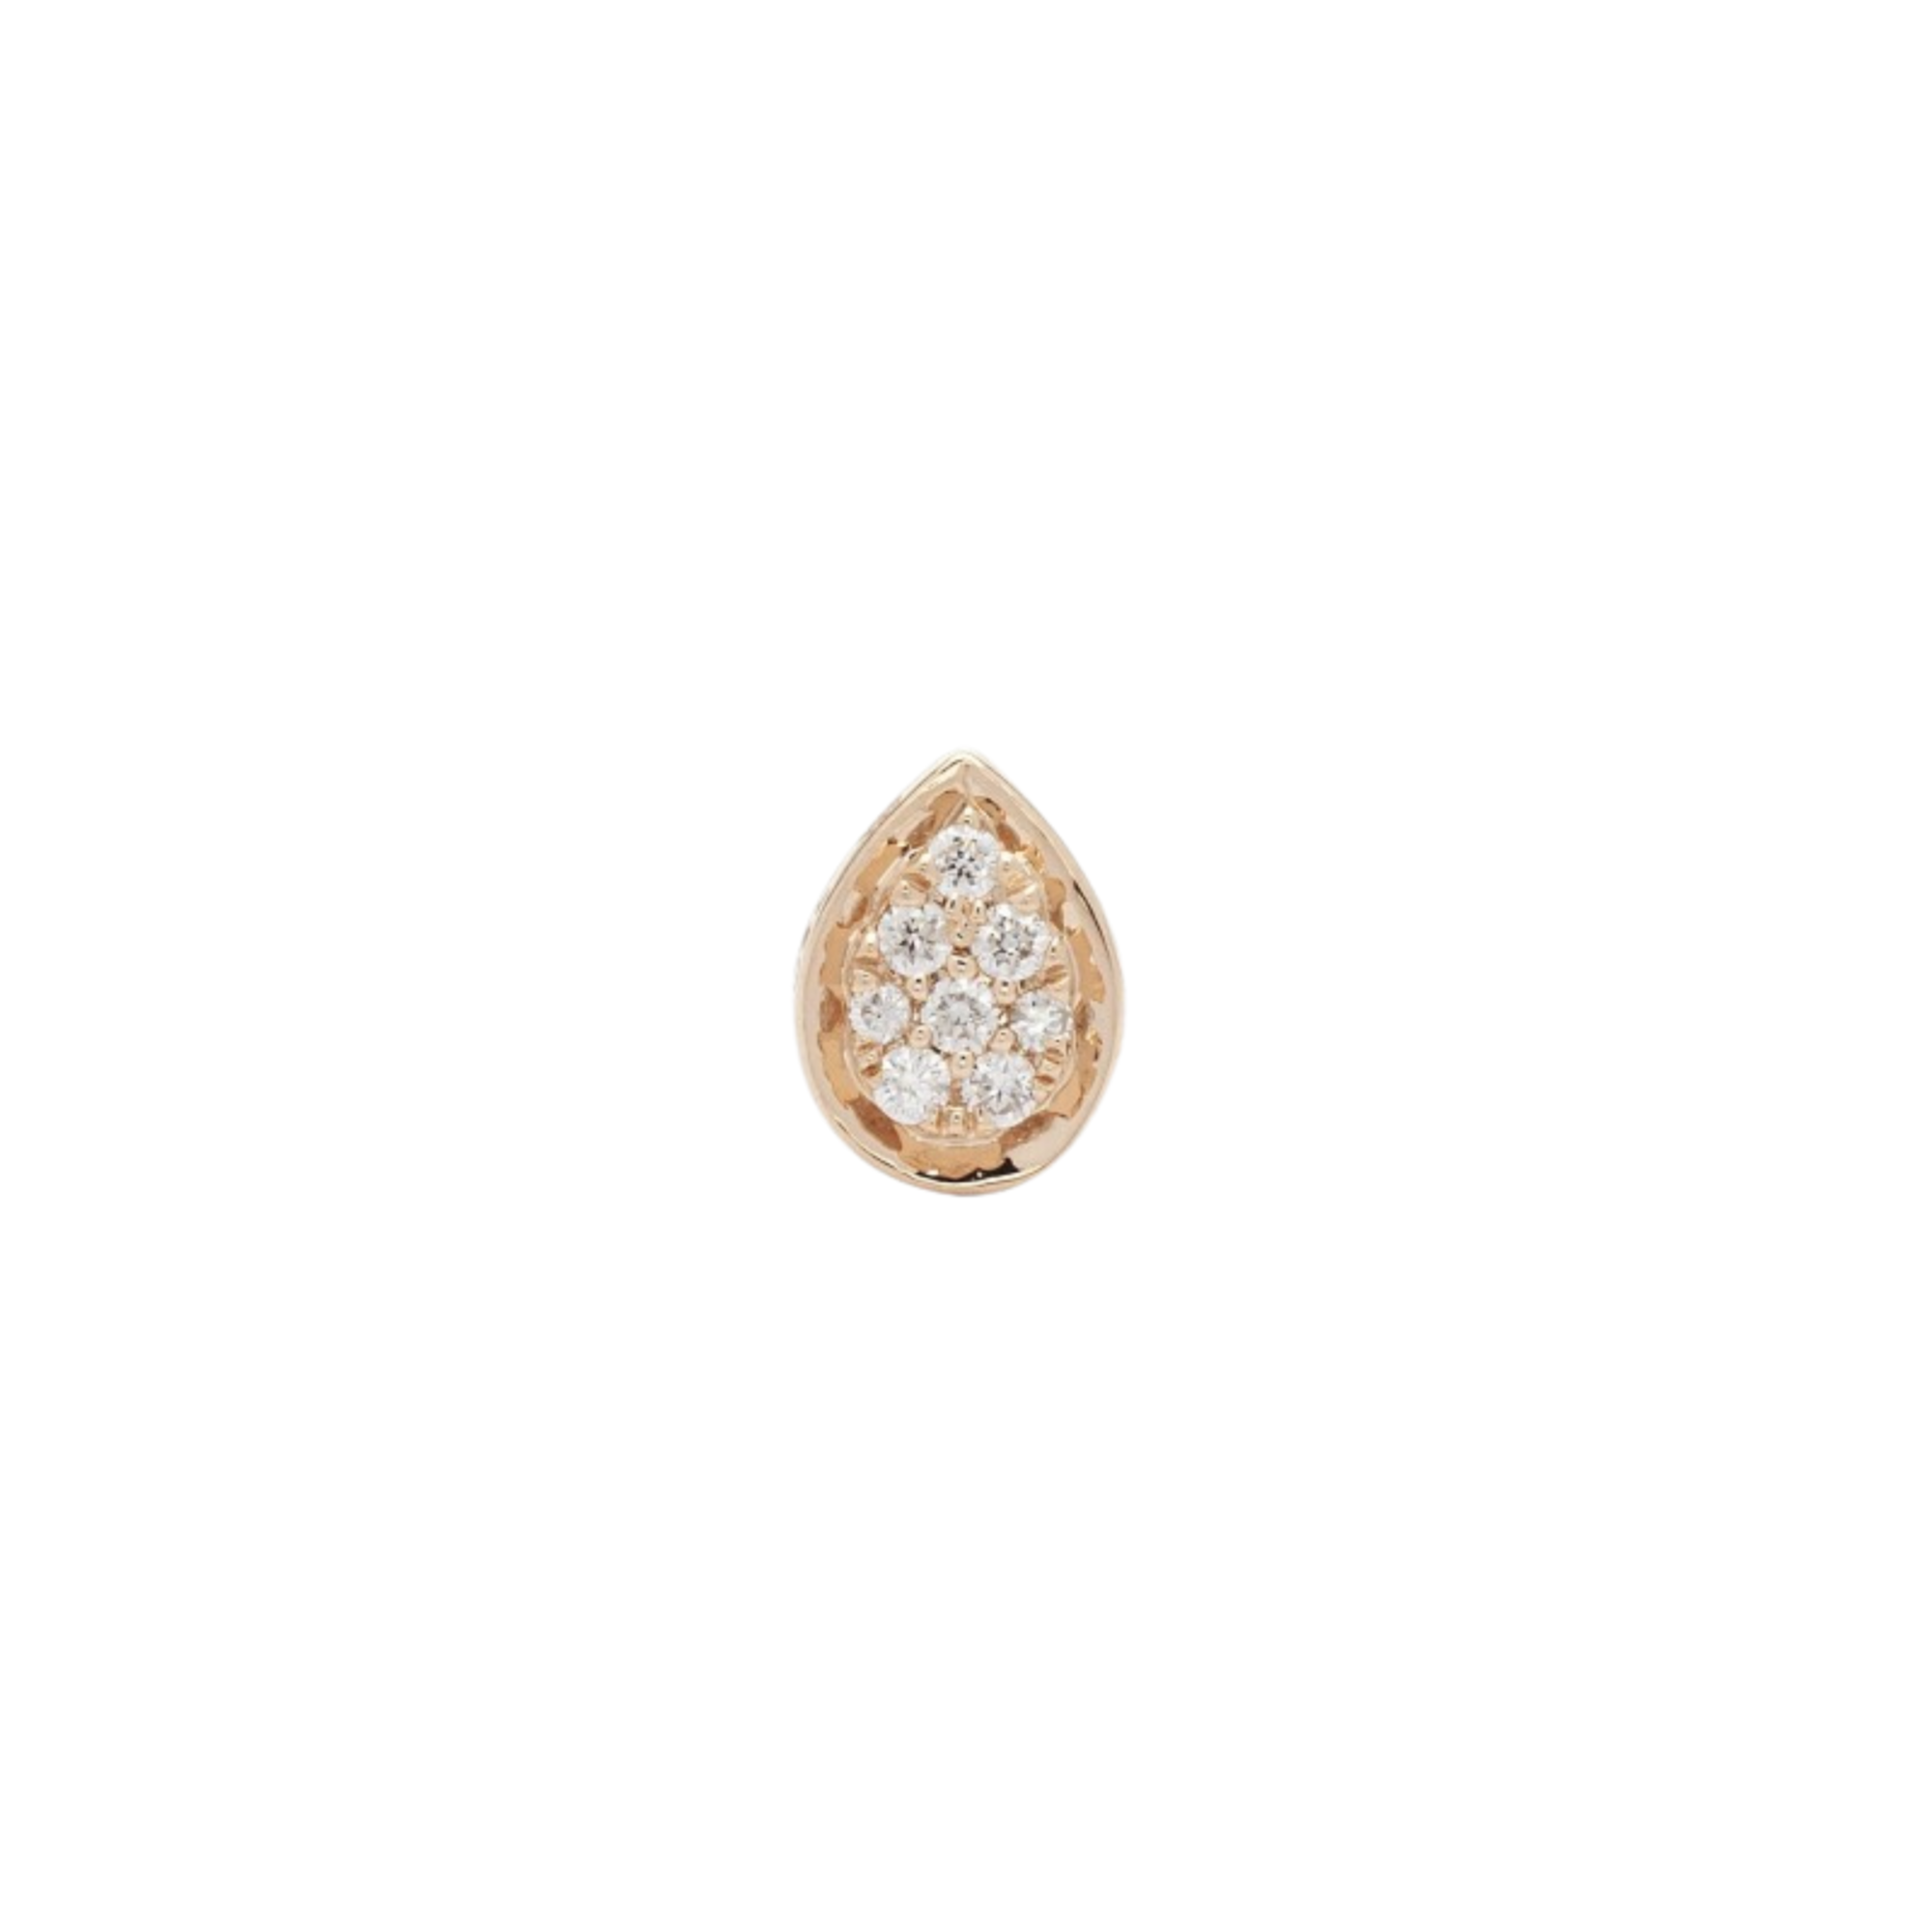 Mono boucle d'oreille puces en diamants forme poire et or rose fabriqué en France bijou chic pour femmes, cadeau idéal pour anniversaire, mariage ou naissance.